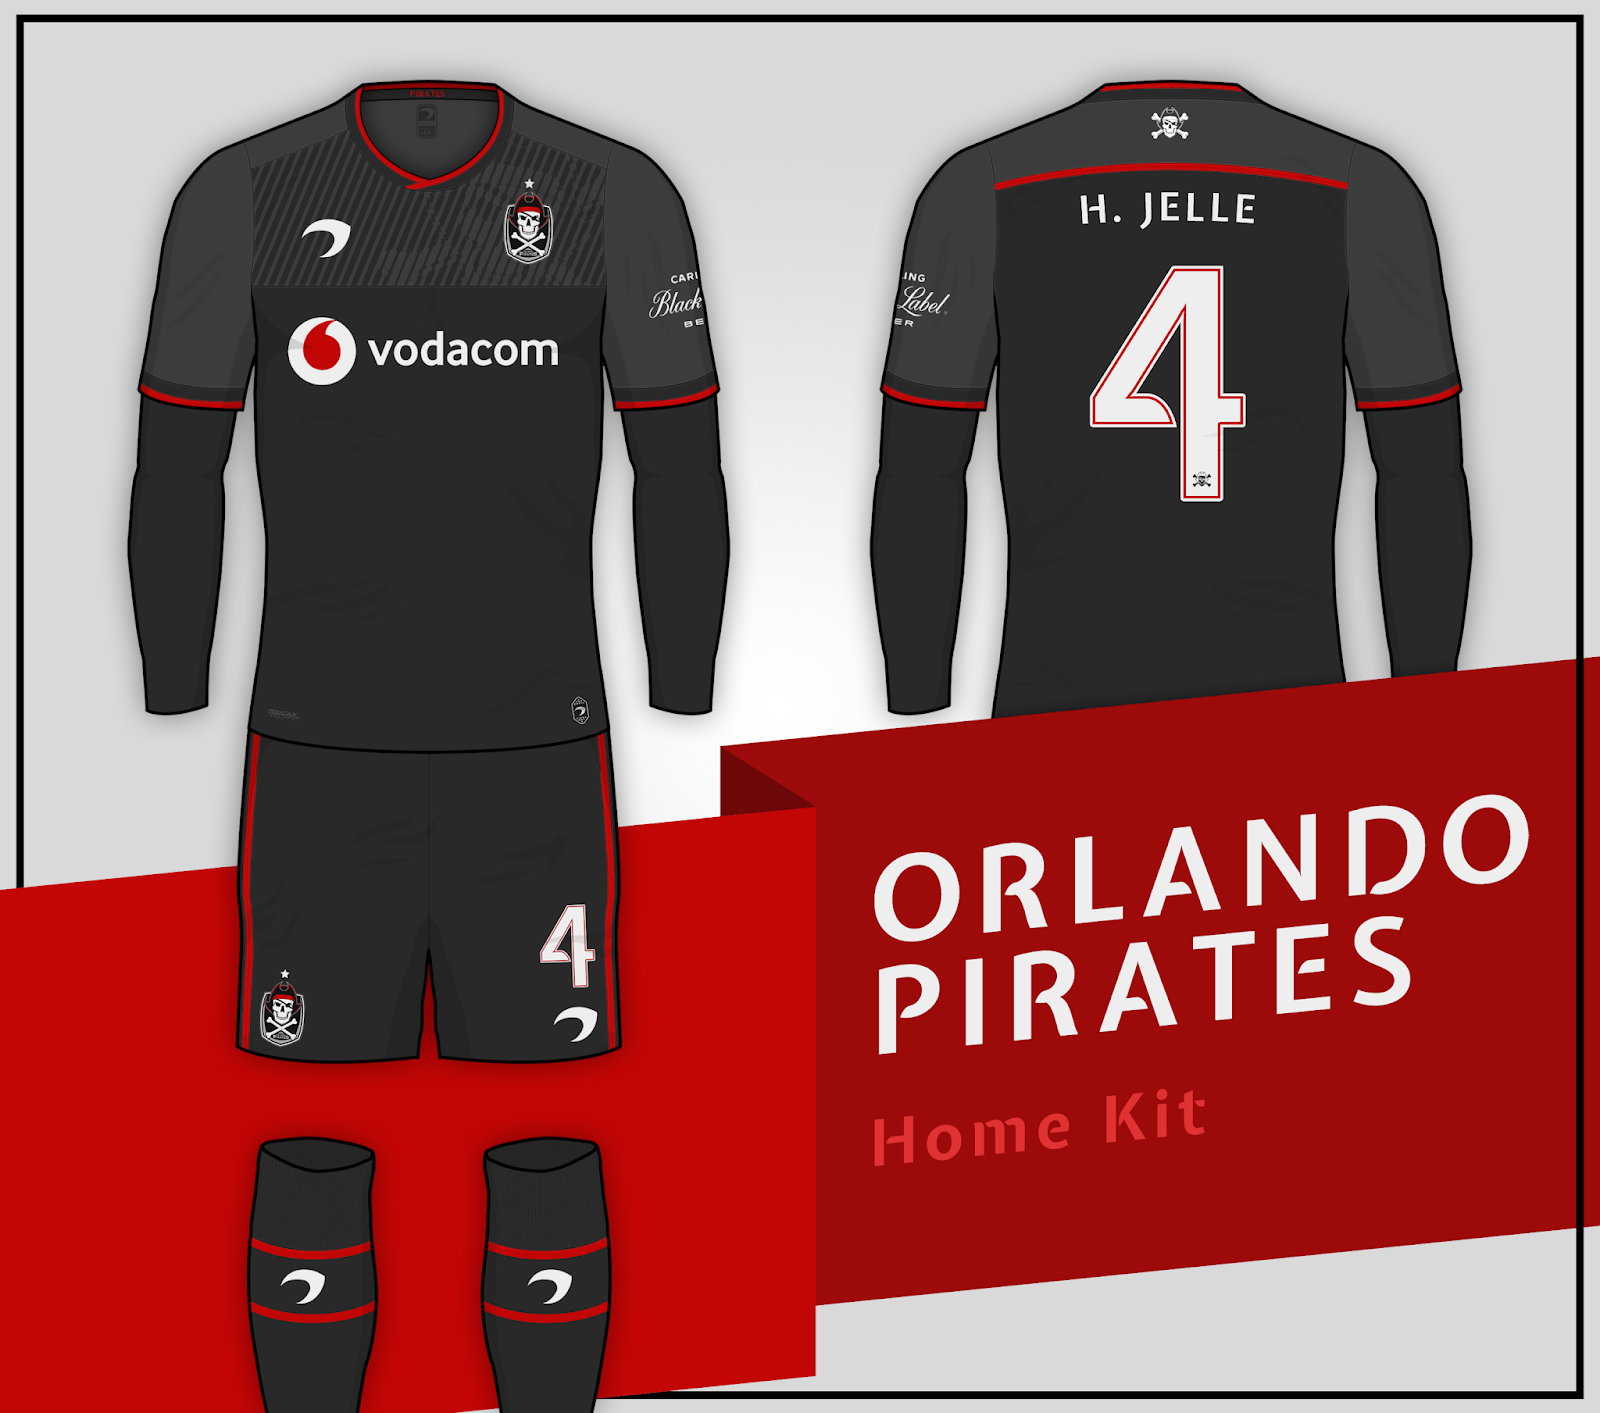 pirates new kits